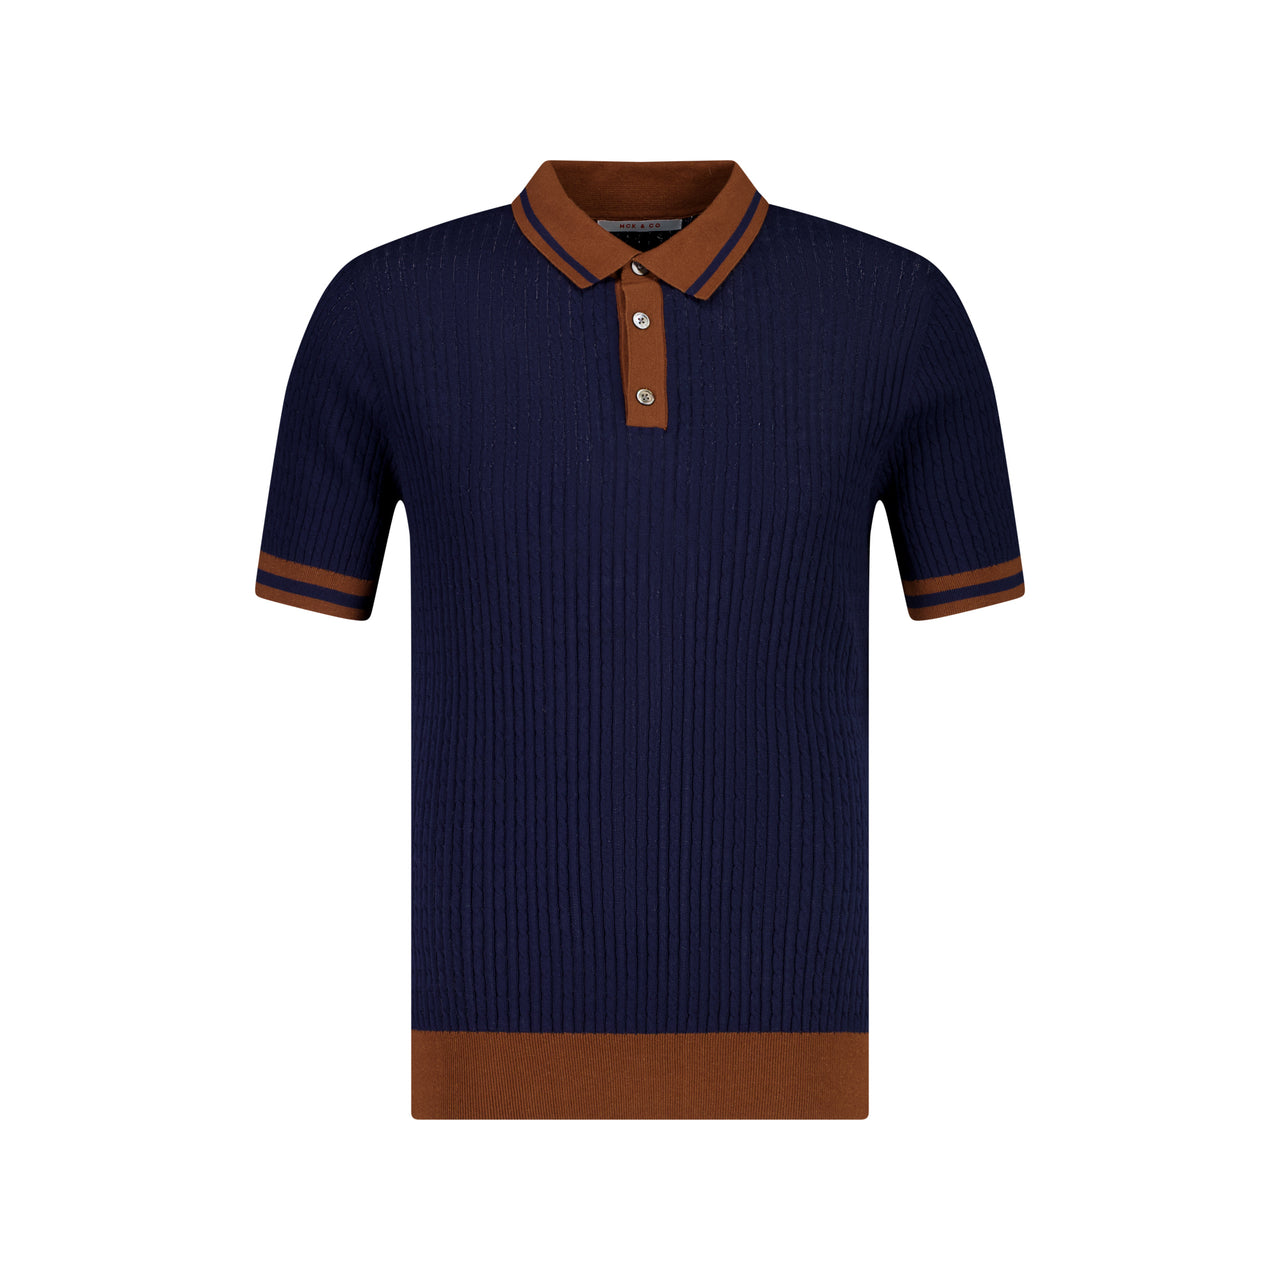 MCKINNON Buttoned Contrast Shirt NAVY/BROWN